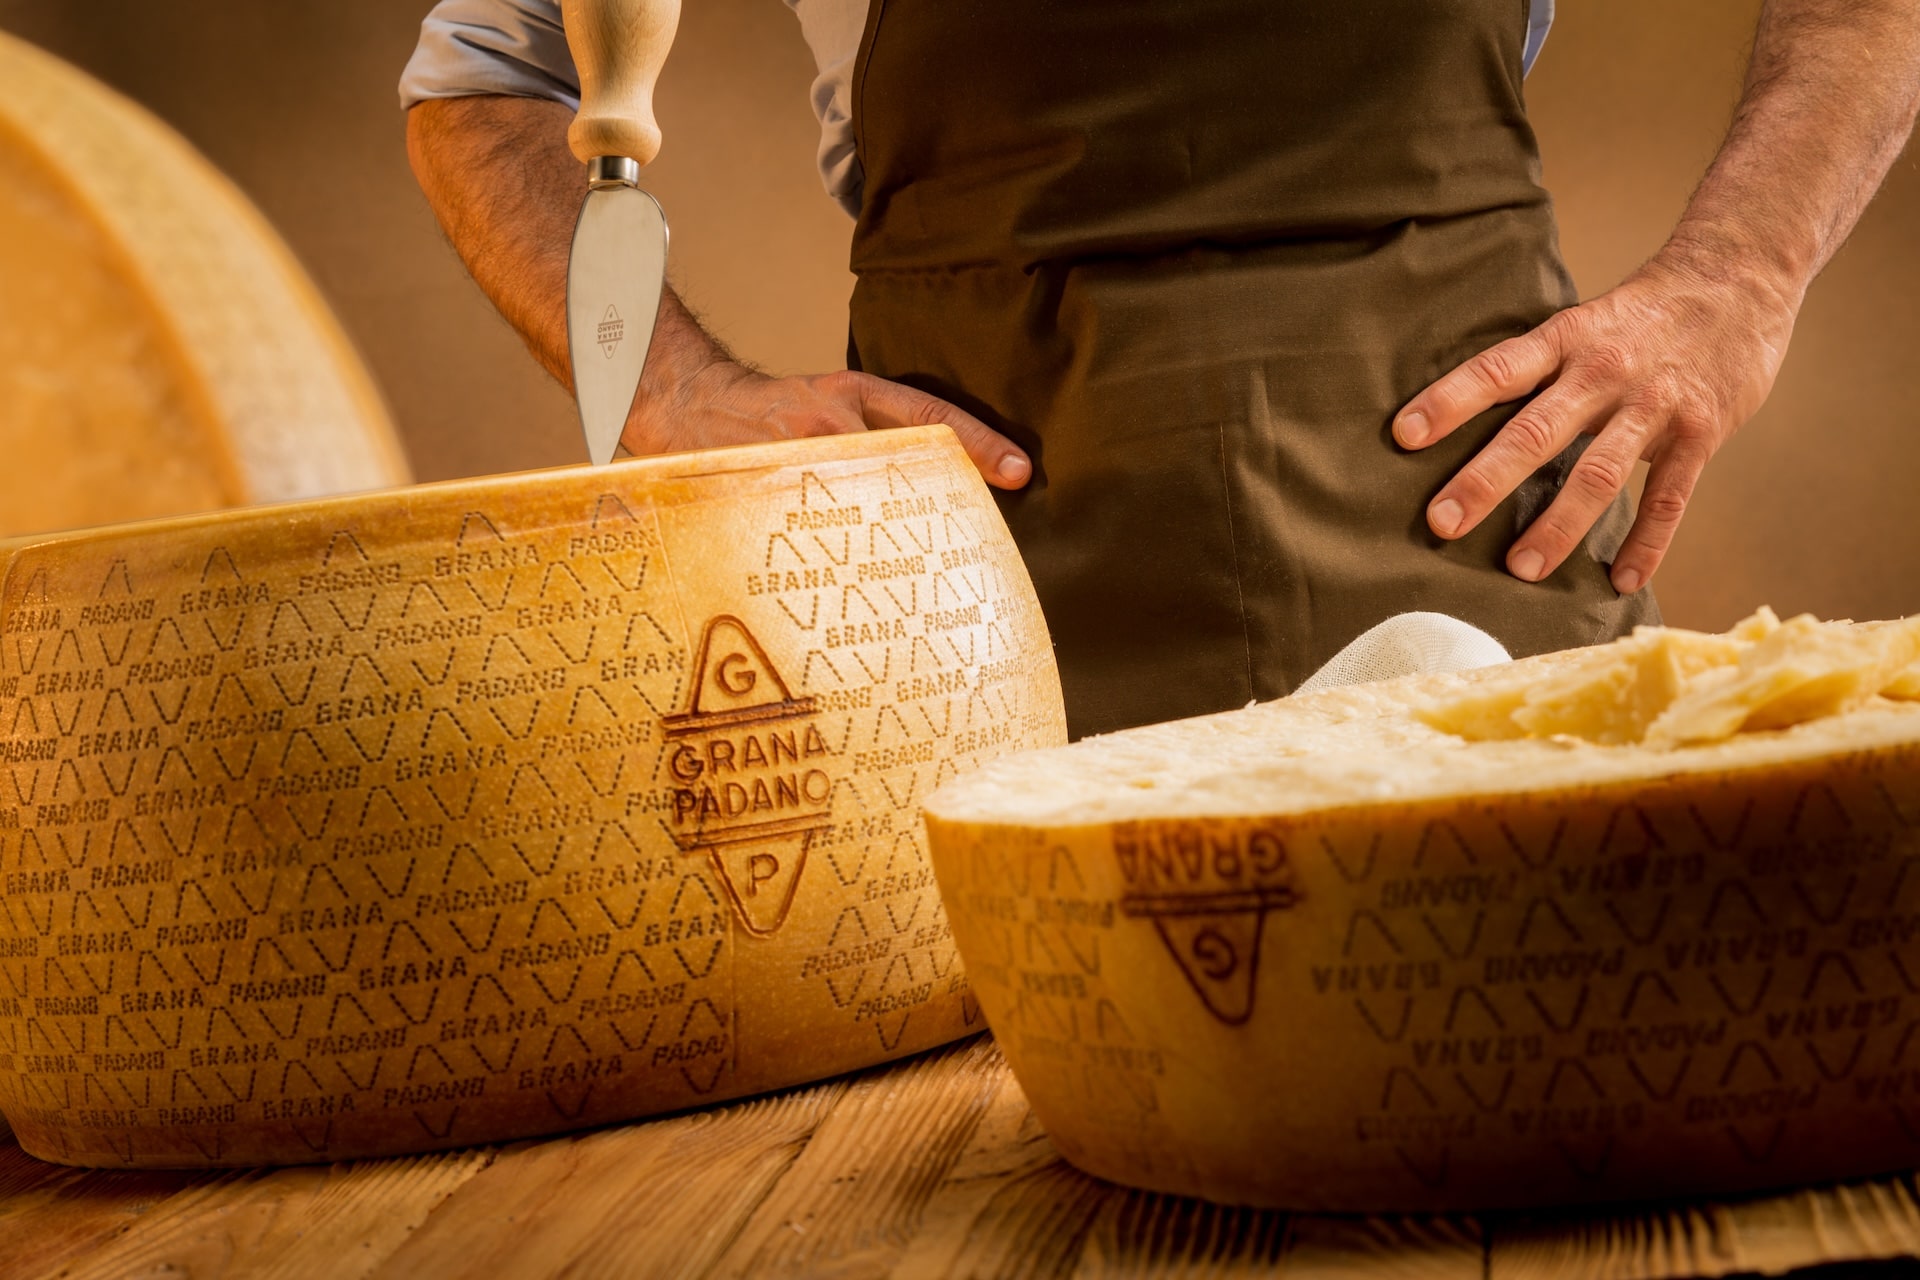 Grana Padano: hur miljön bestämmer ostens egenheter